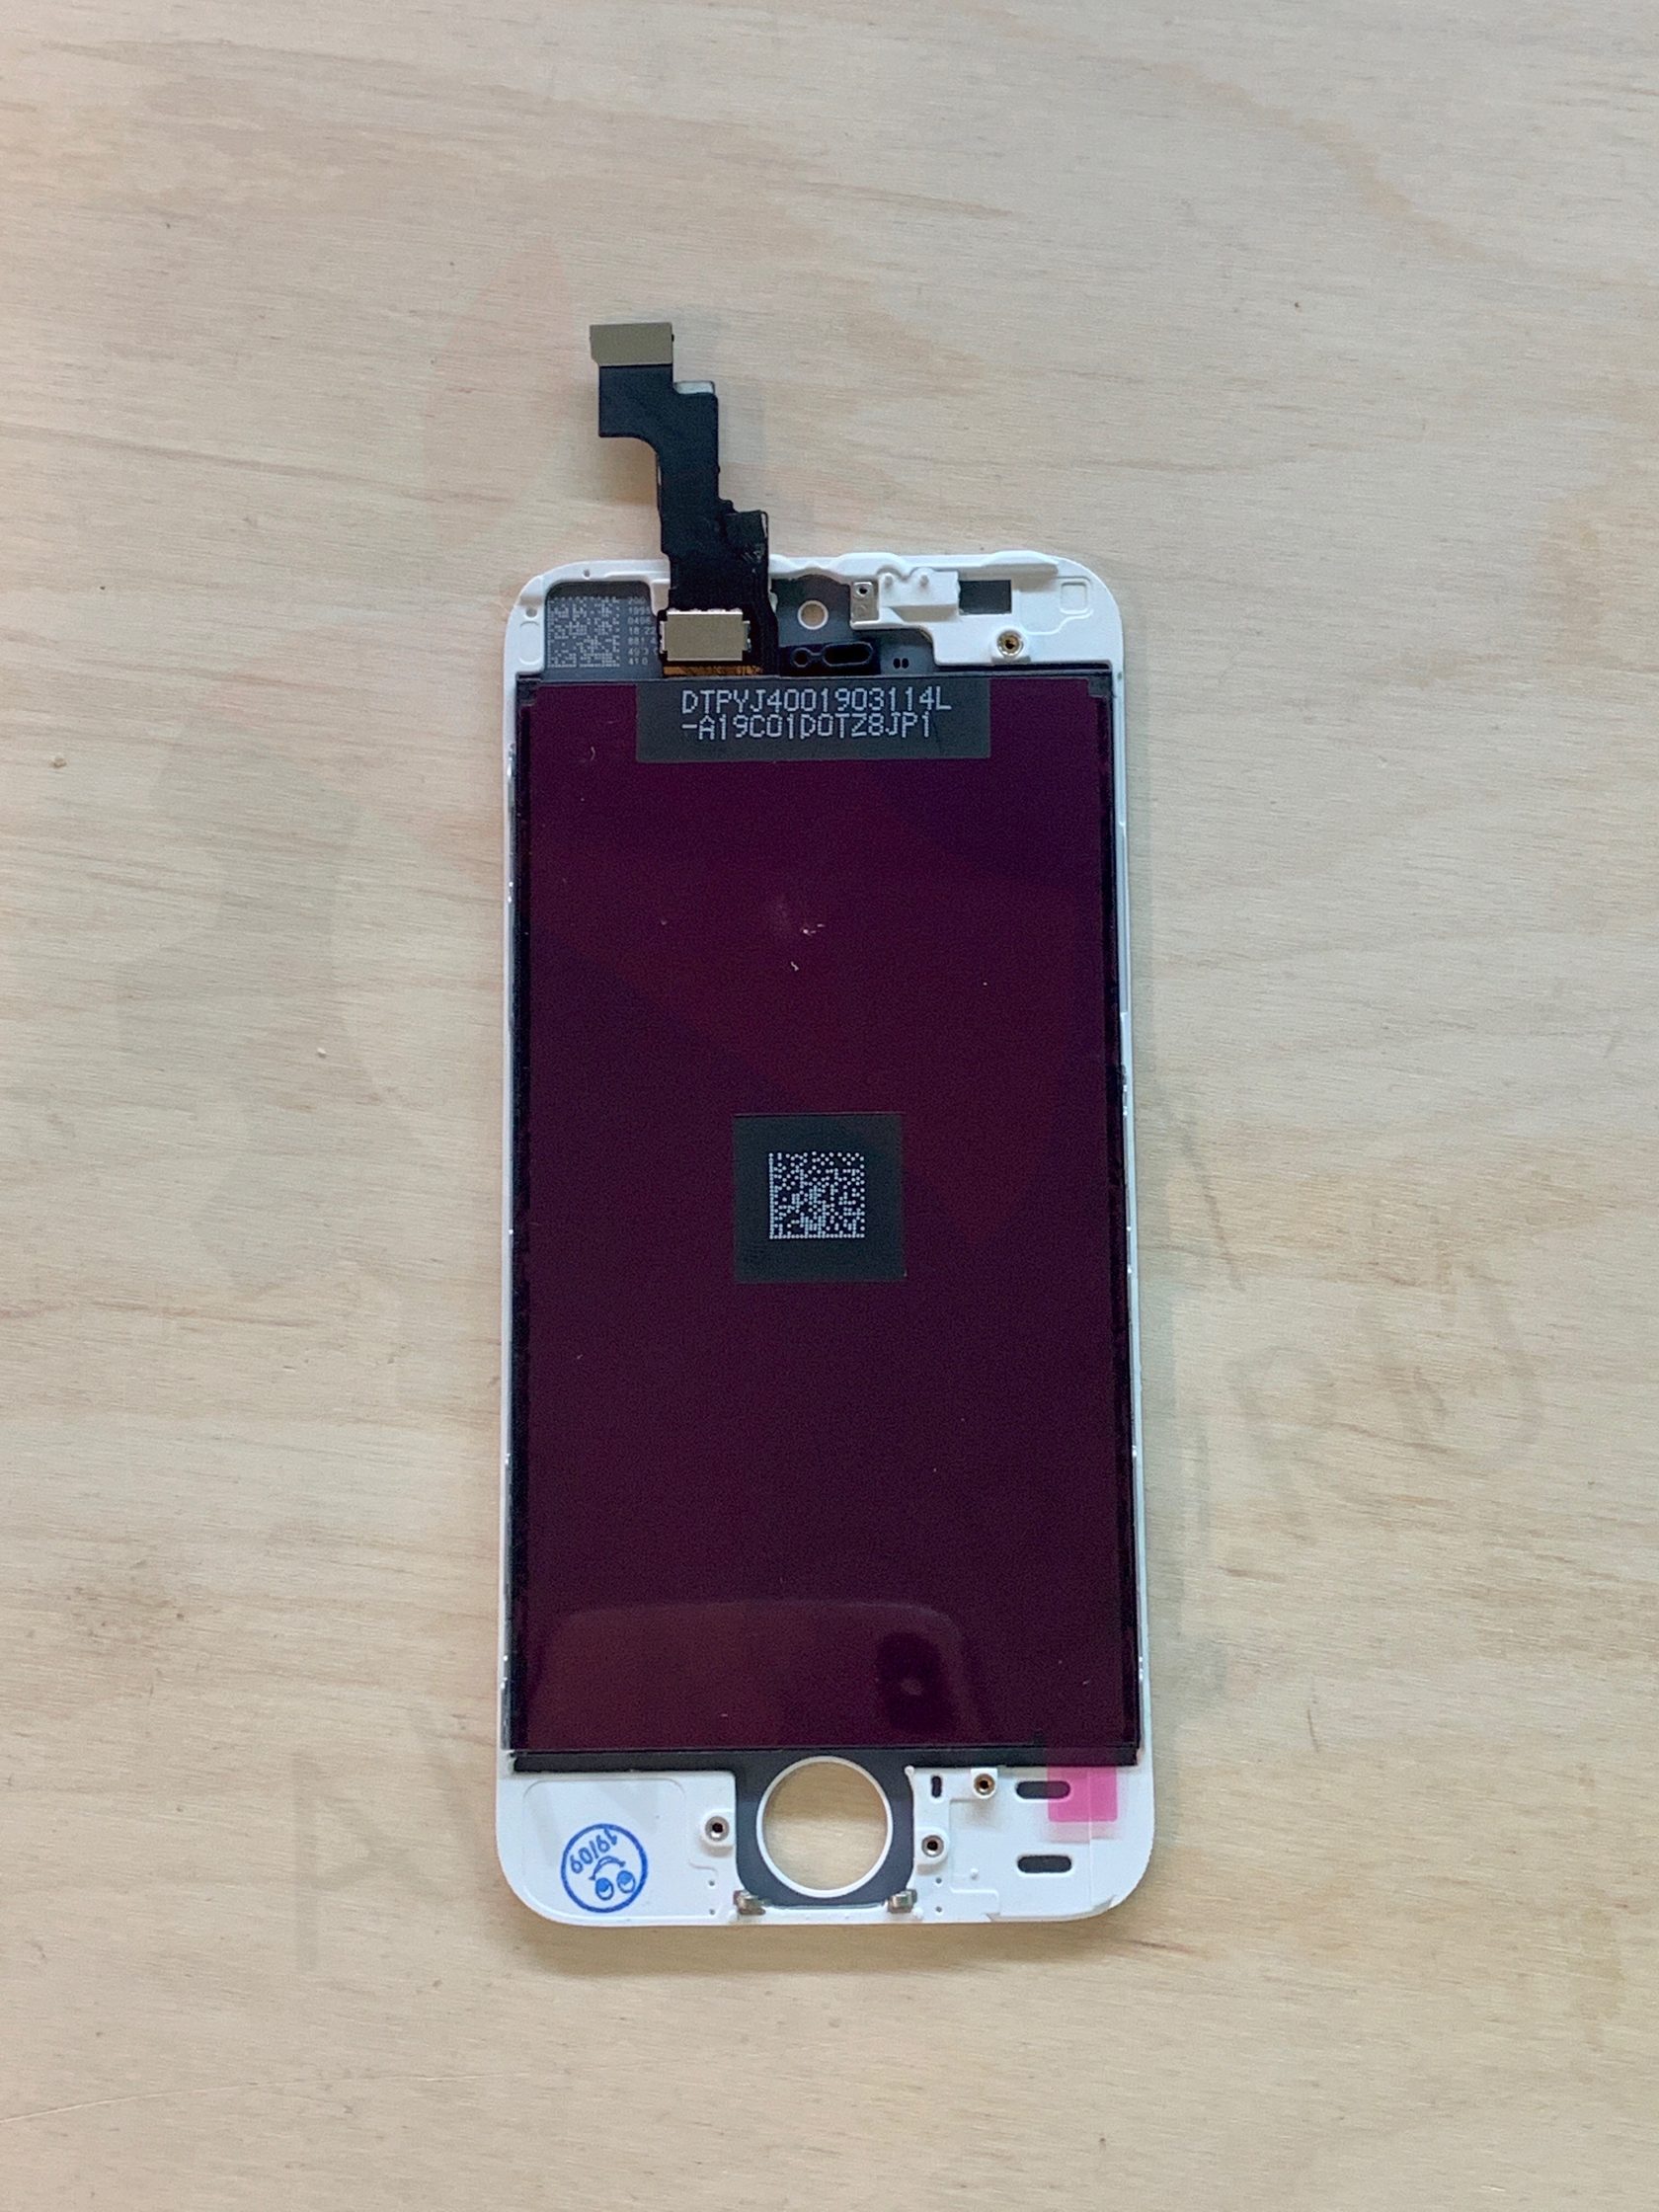 Замена дисплея iPhone 5 | Срочная замена экрана айфона 5 в одном из сервисных центров